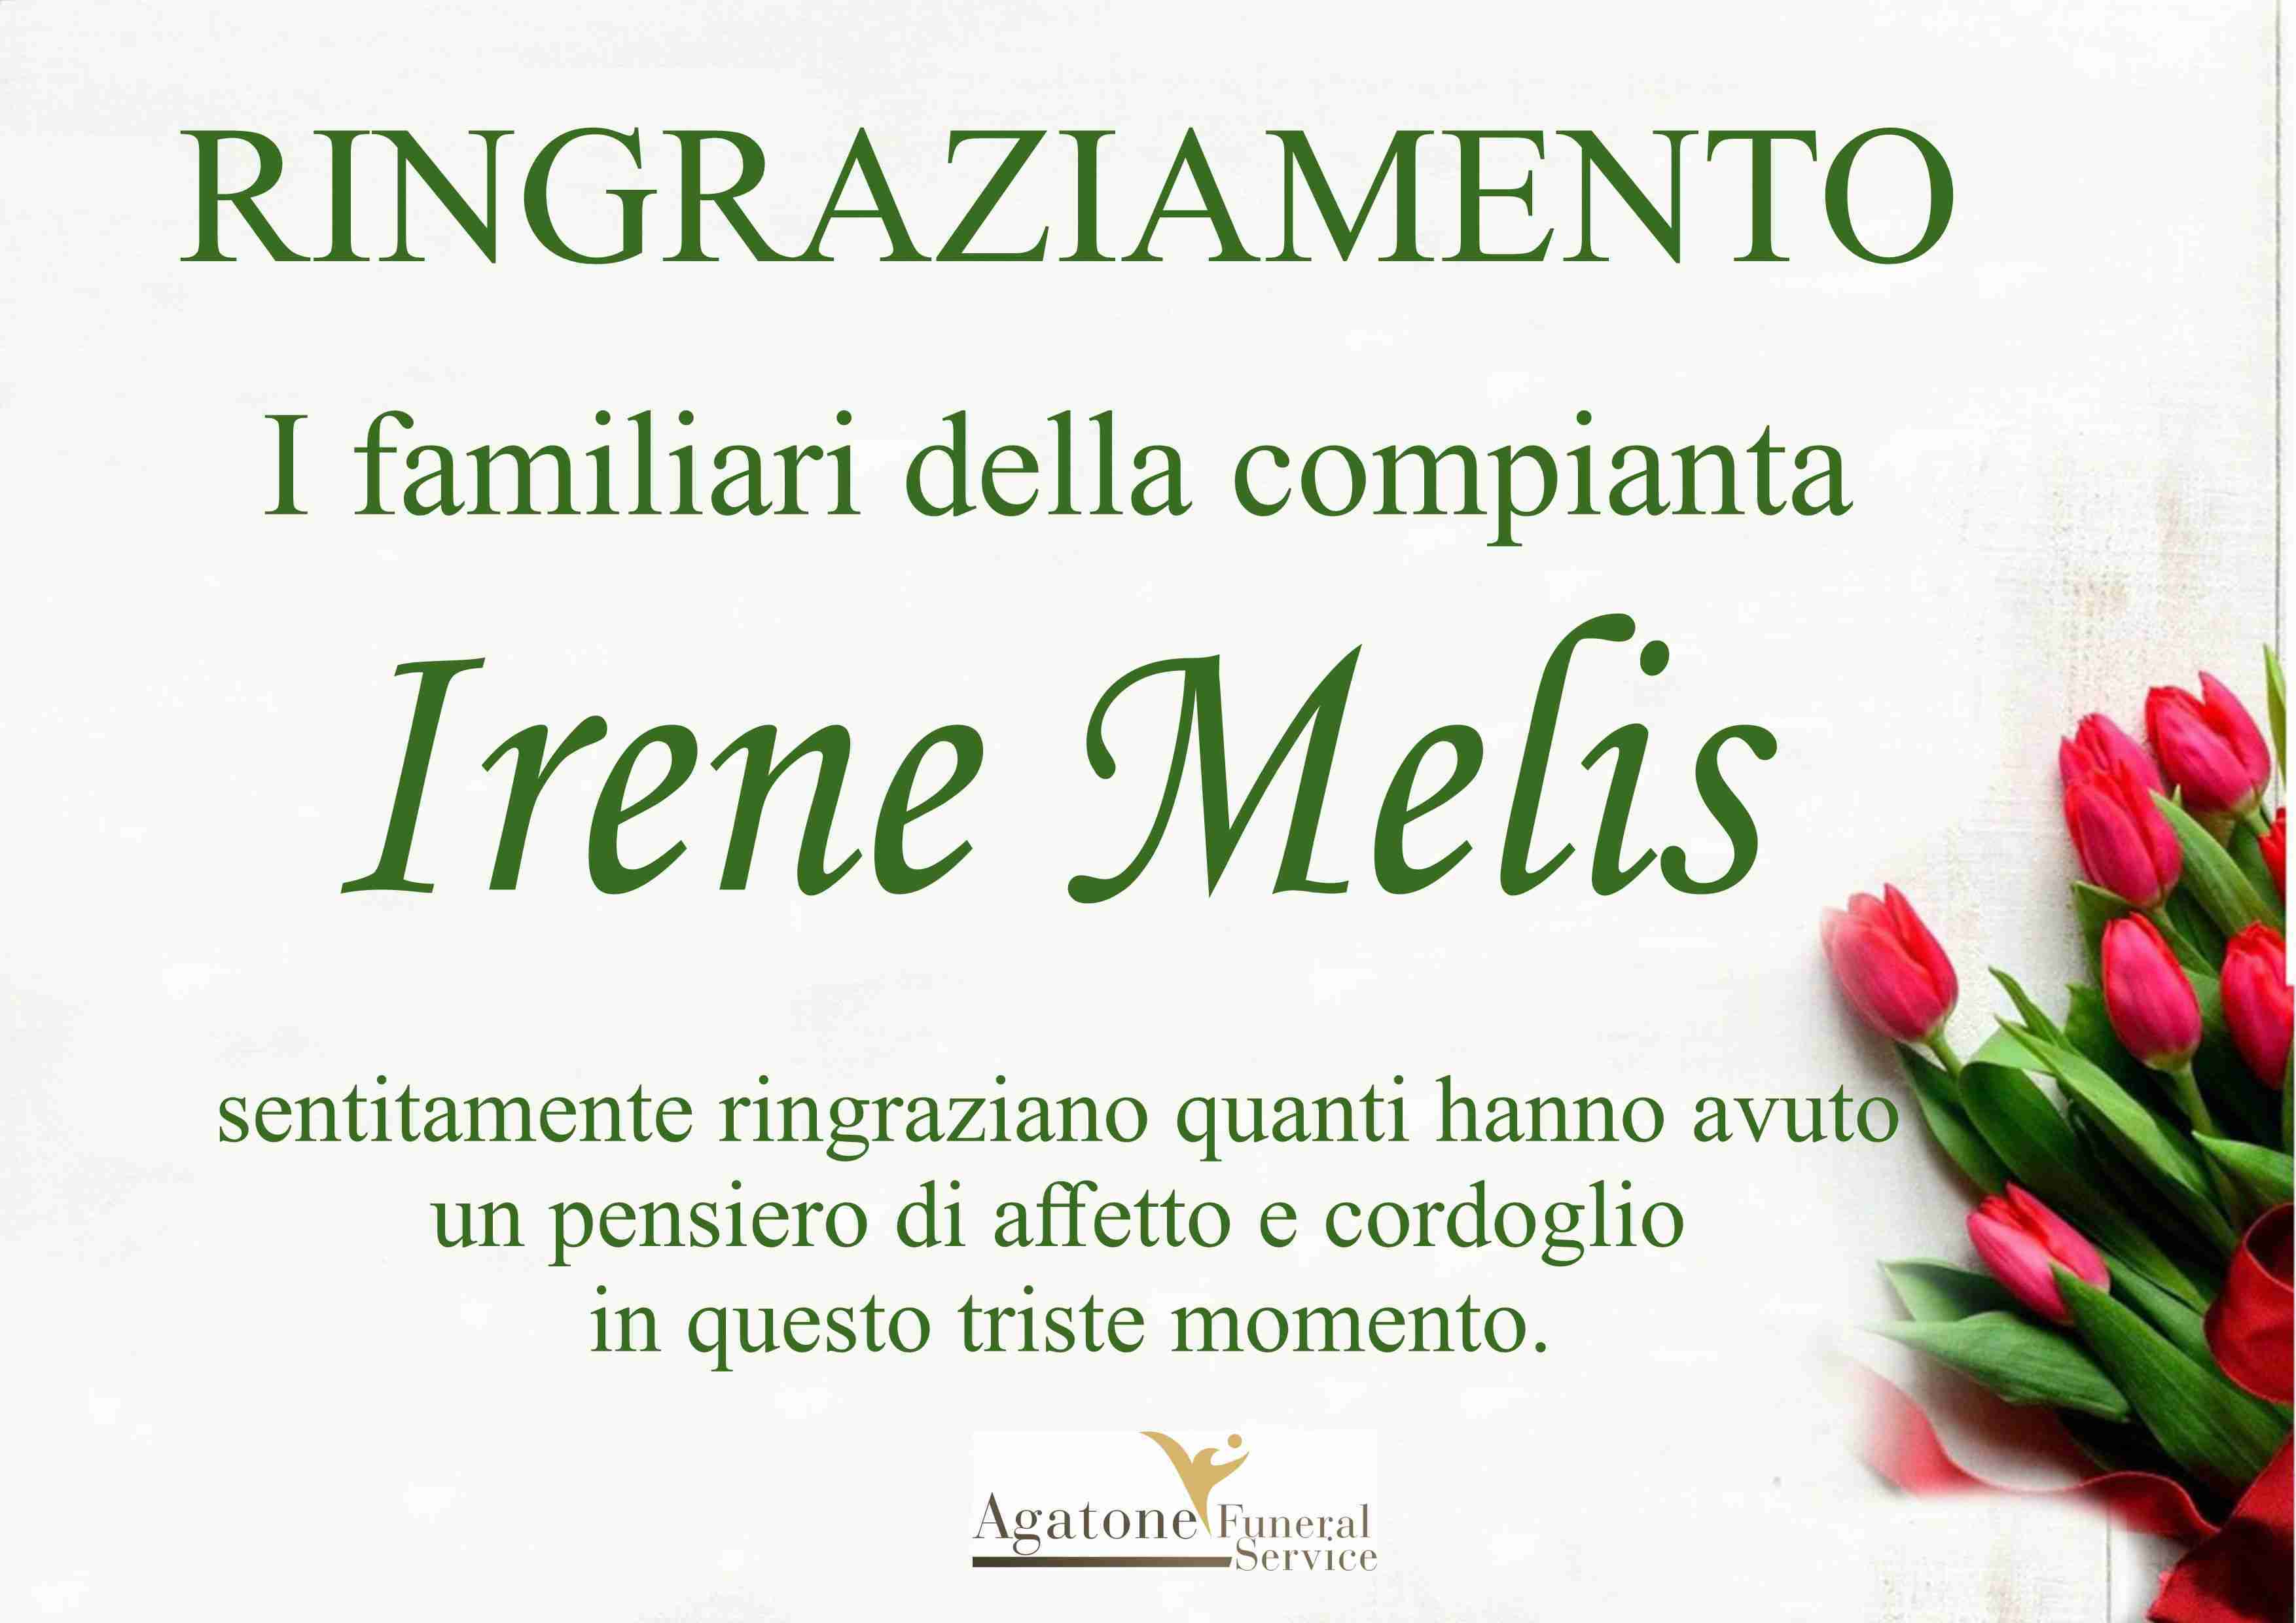 Irene Melis